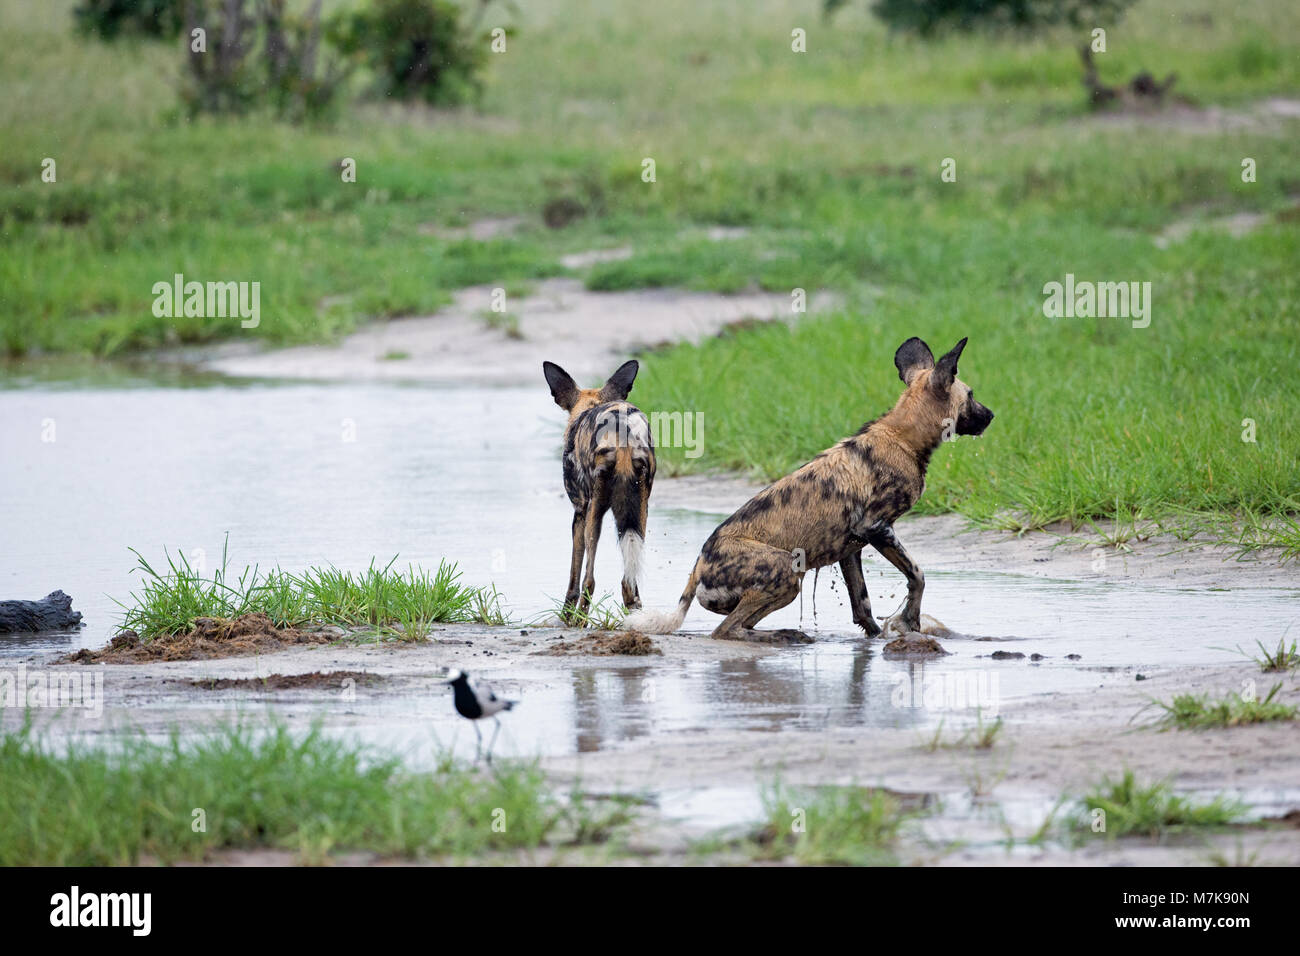 Chien de chasse africaine, chien sauvage d'Afrique, ou peint ou peint Chien Loup, (Lycaon pictus). Deux d'un pack se baigner dans une piscine peu profonde formée de dow récente Banque D'Images